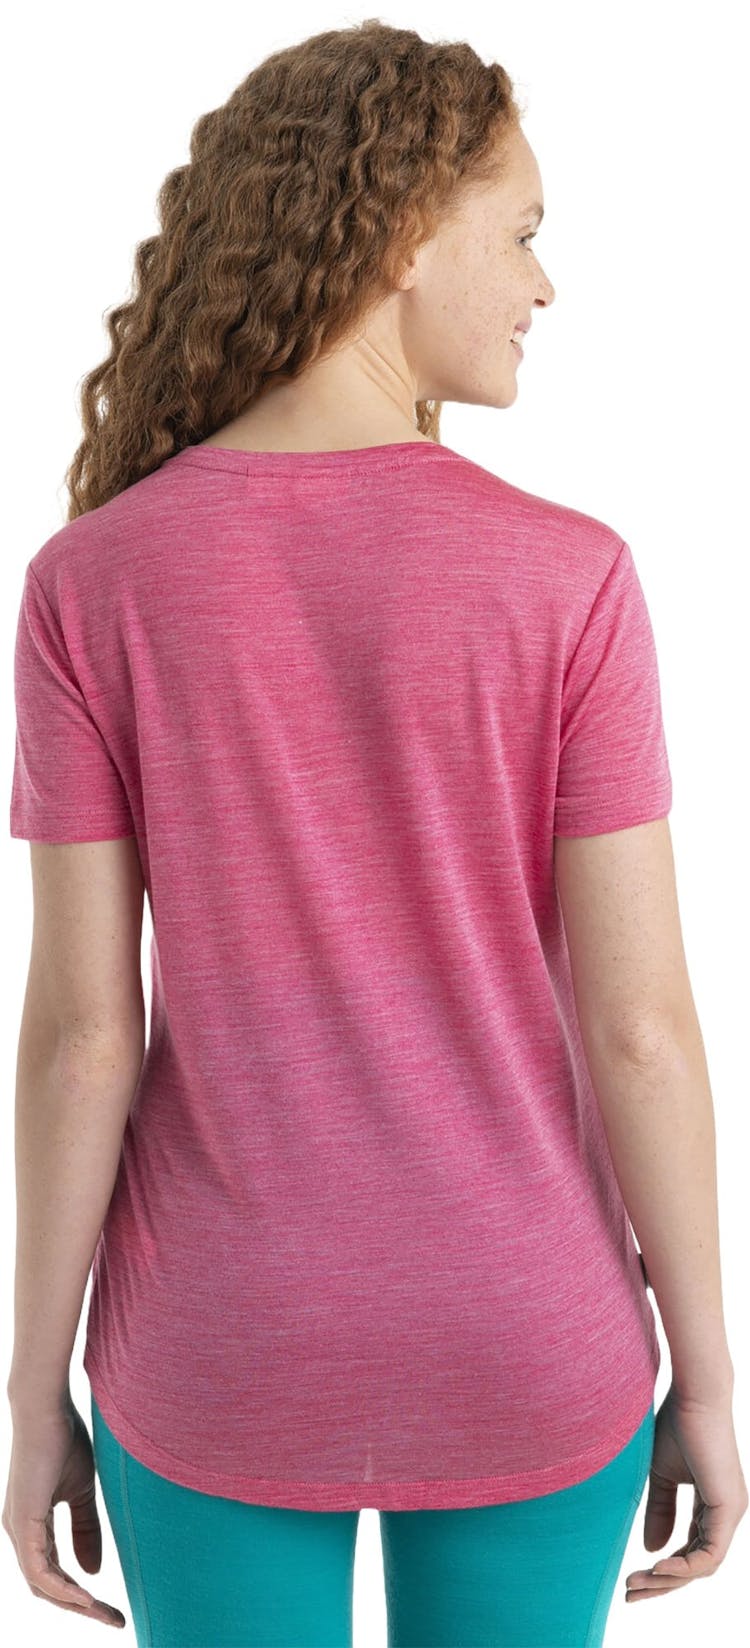 Numéro de l'image de la galerie de produits 2 pour le produit T-shirt à manches courtes Mérino 125 Cool-Lite Sphere II Peak Quest - Femme